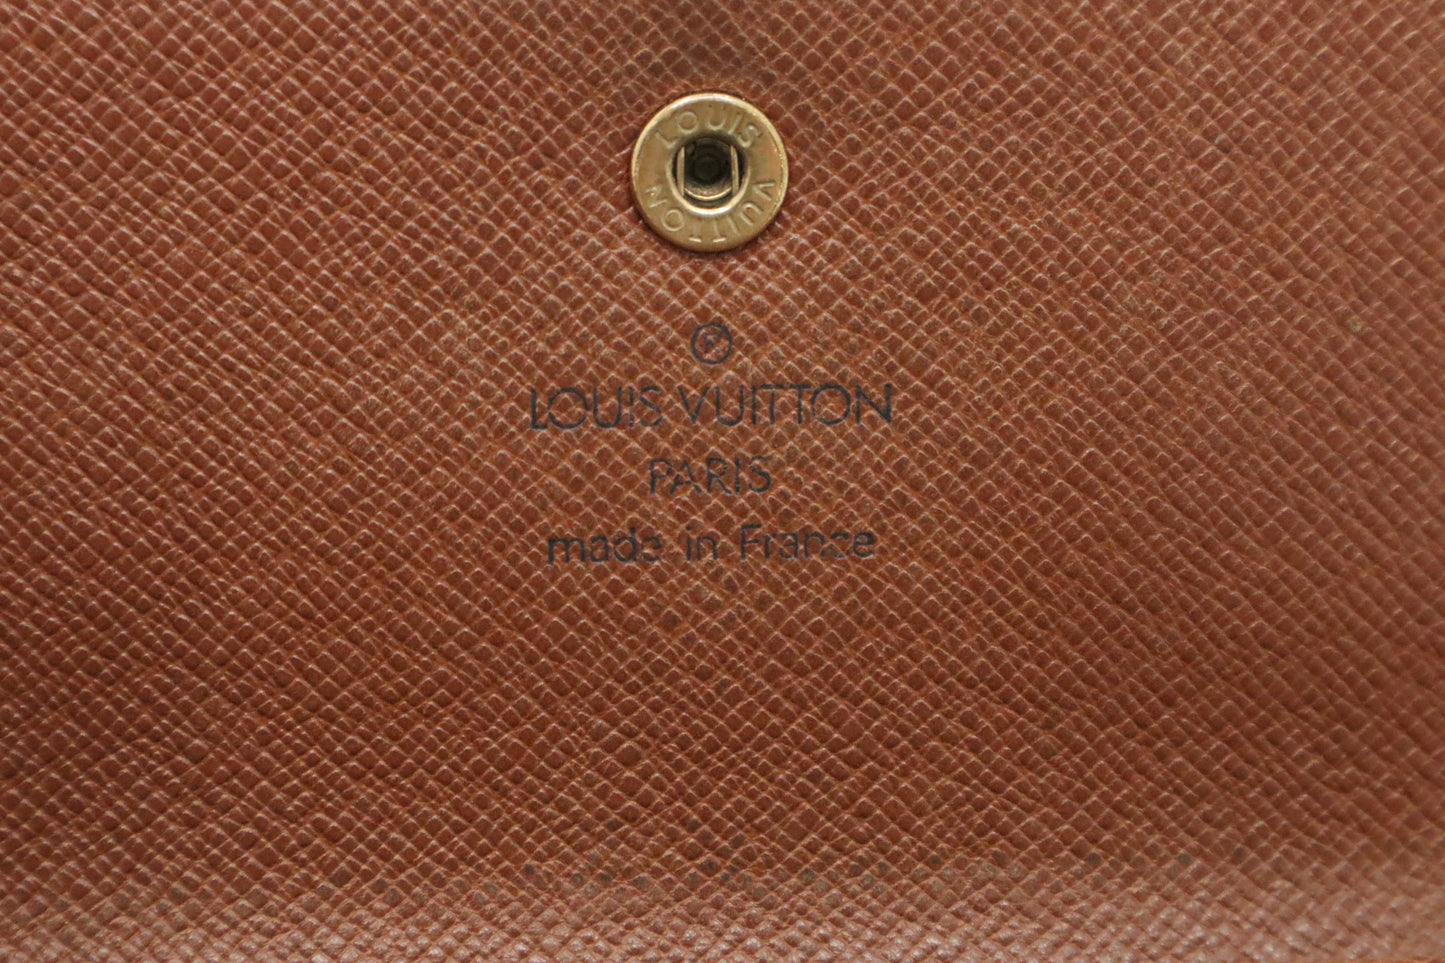 Louis Vuitton International Wallet in Monogram Canvas